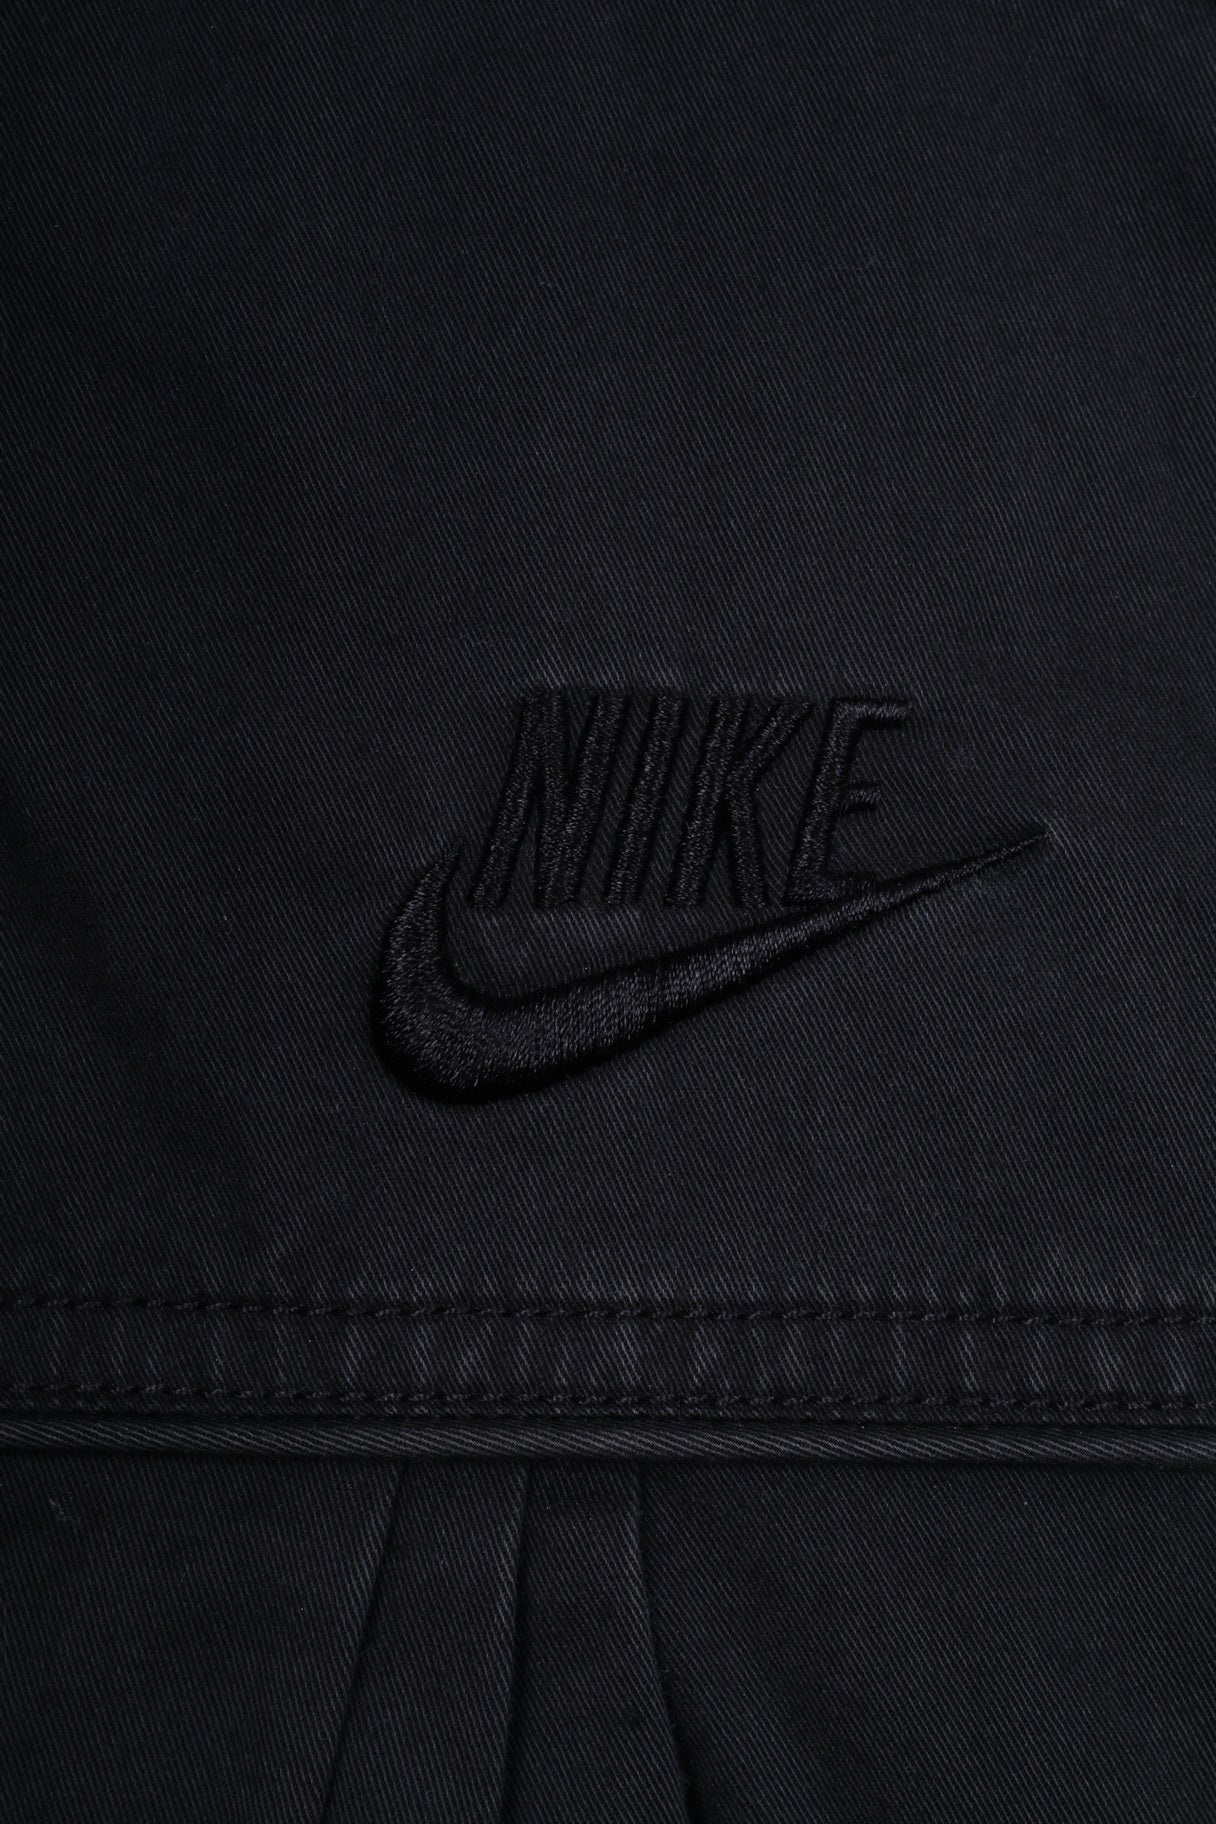 Nike Sportswear Womens L 14/16 Jacket Black Cotton Full Zipper Pocket